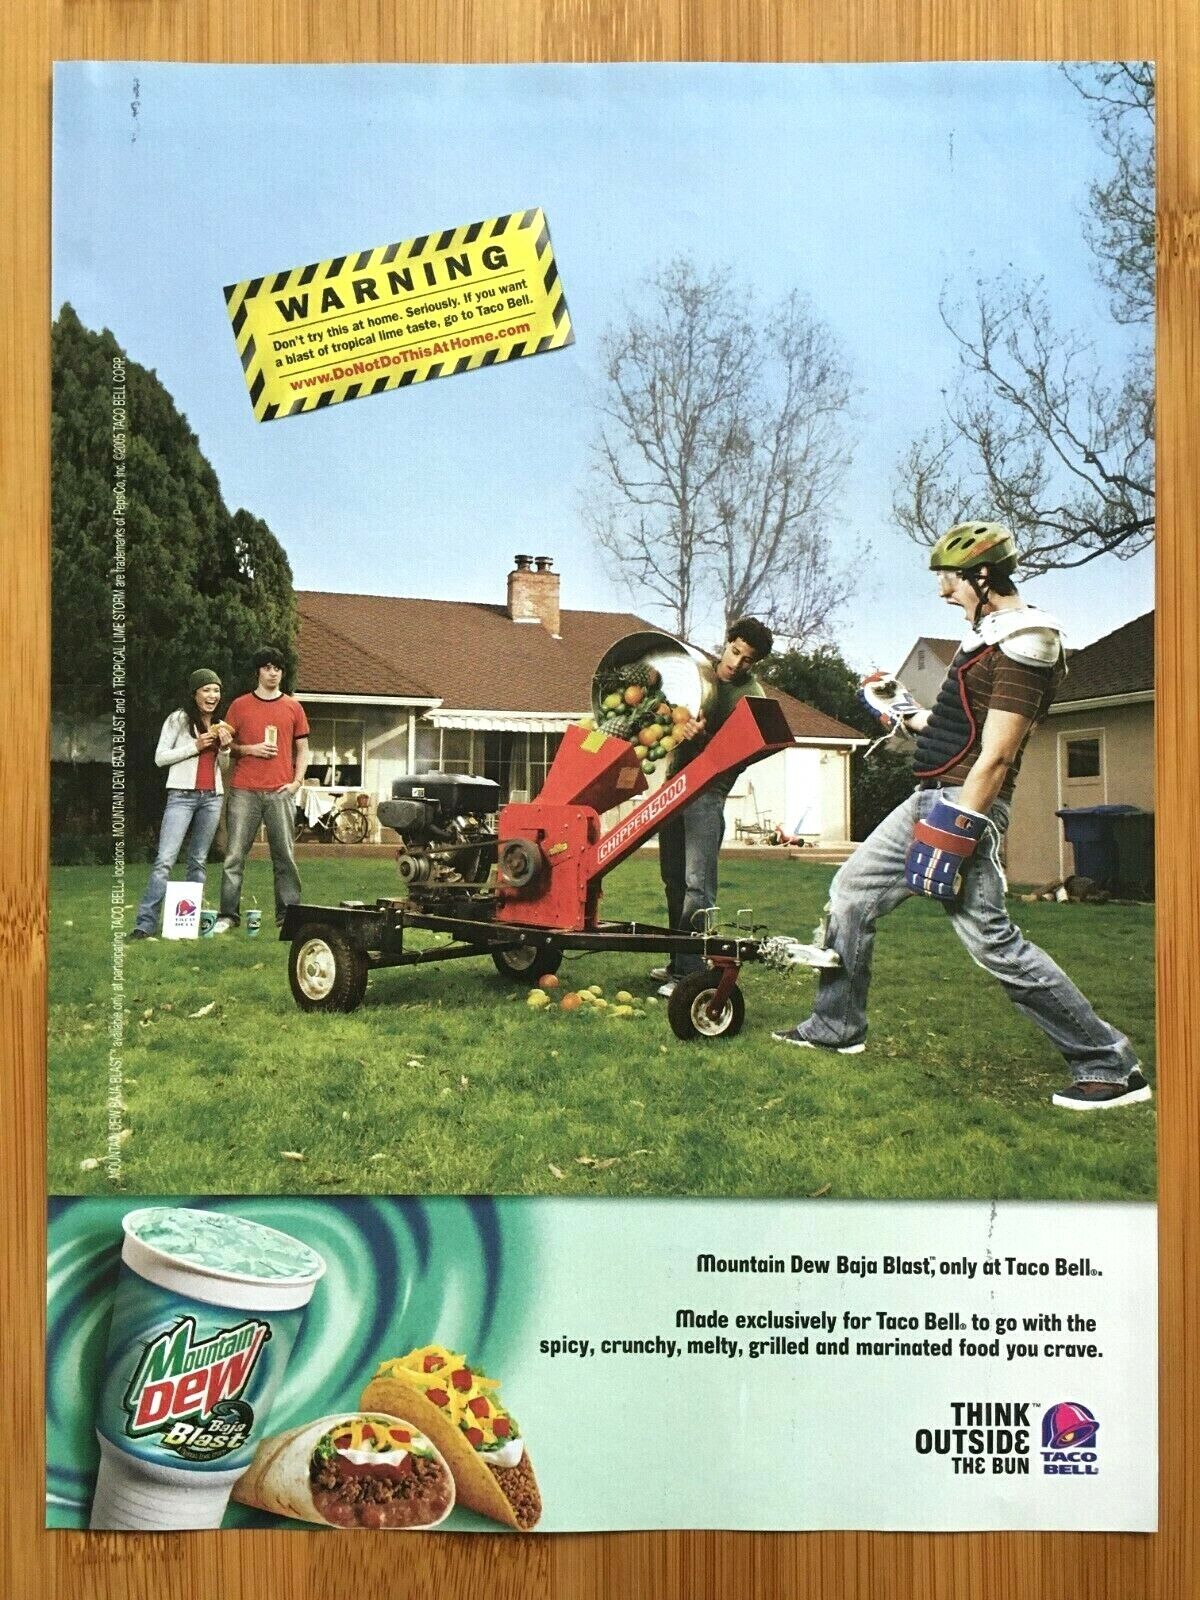 2005 Taco Bell & Mountain Dew Baja Blast Print Ad/Poster Fast Food Man Cave Art